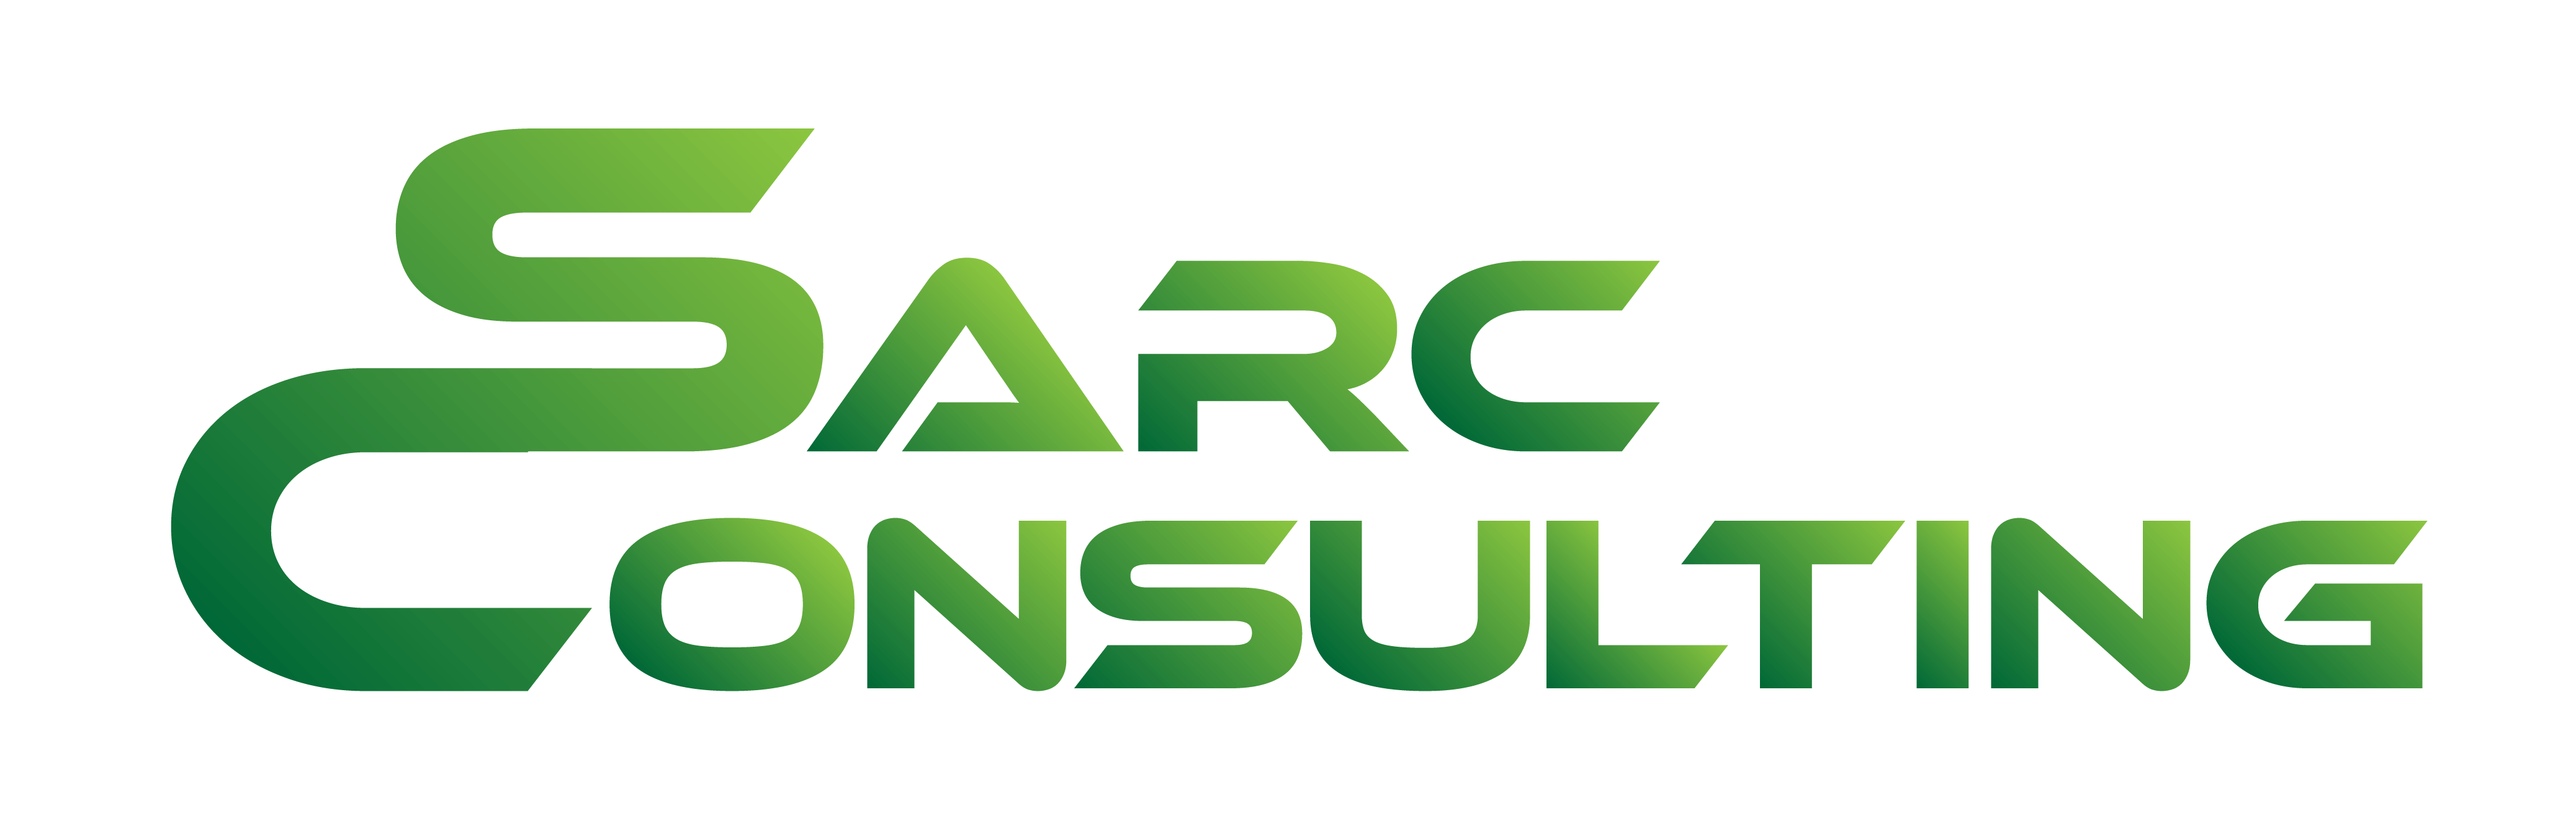 Sarc Consulting logo